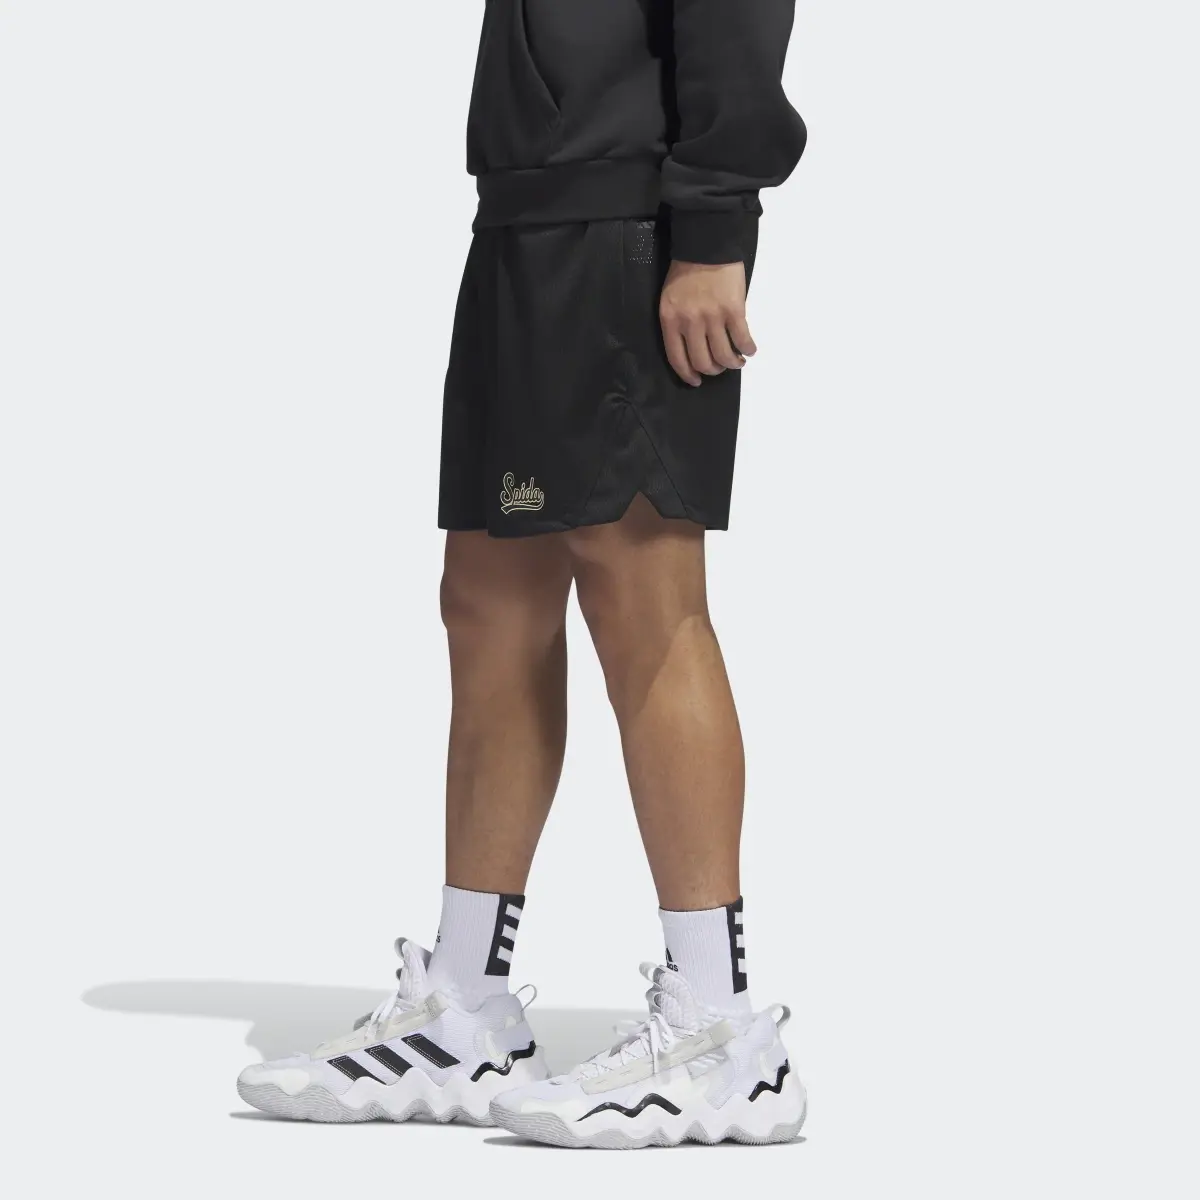 Adidas D.O.N. Select Shorts. 2